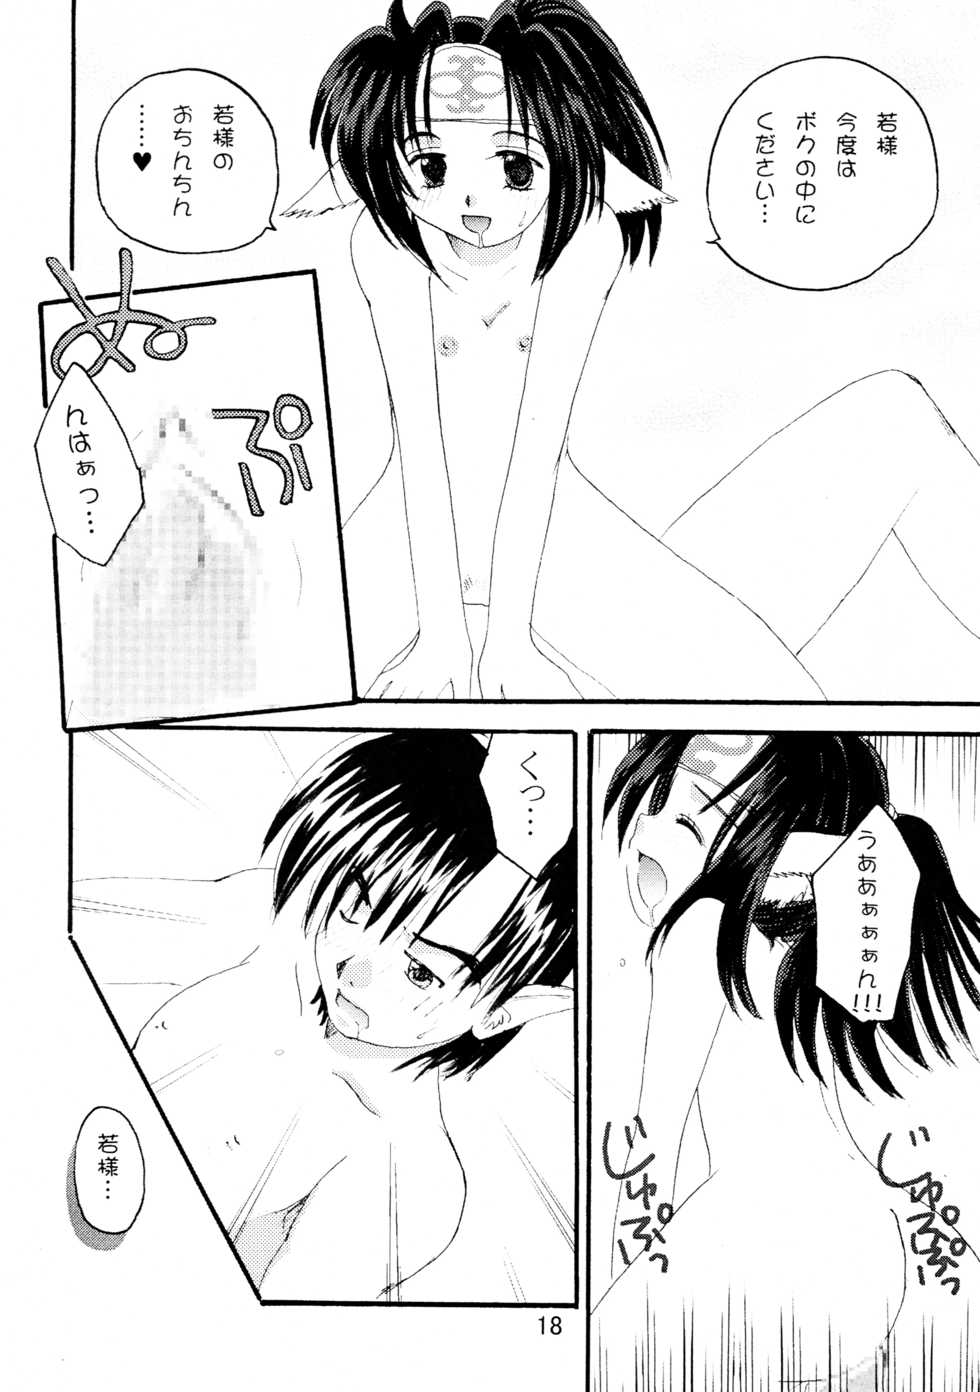 [Beautiful Snow (Miyu)] Yorokobi no Uta (Utawarerumono) - Page 18